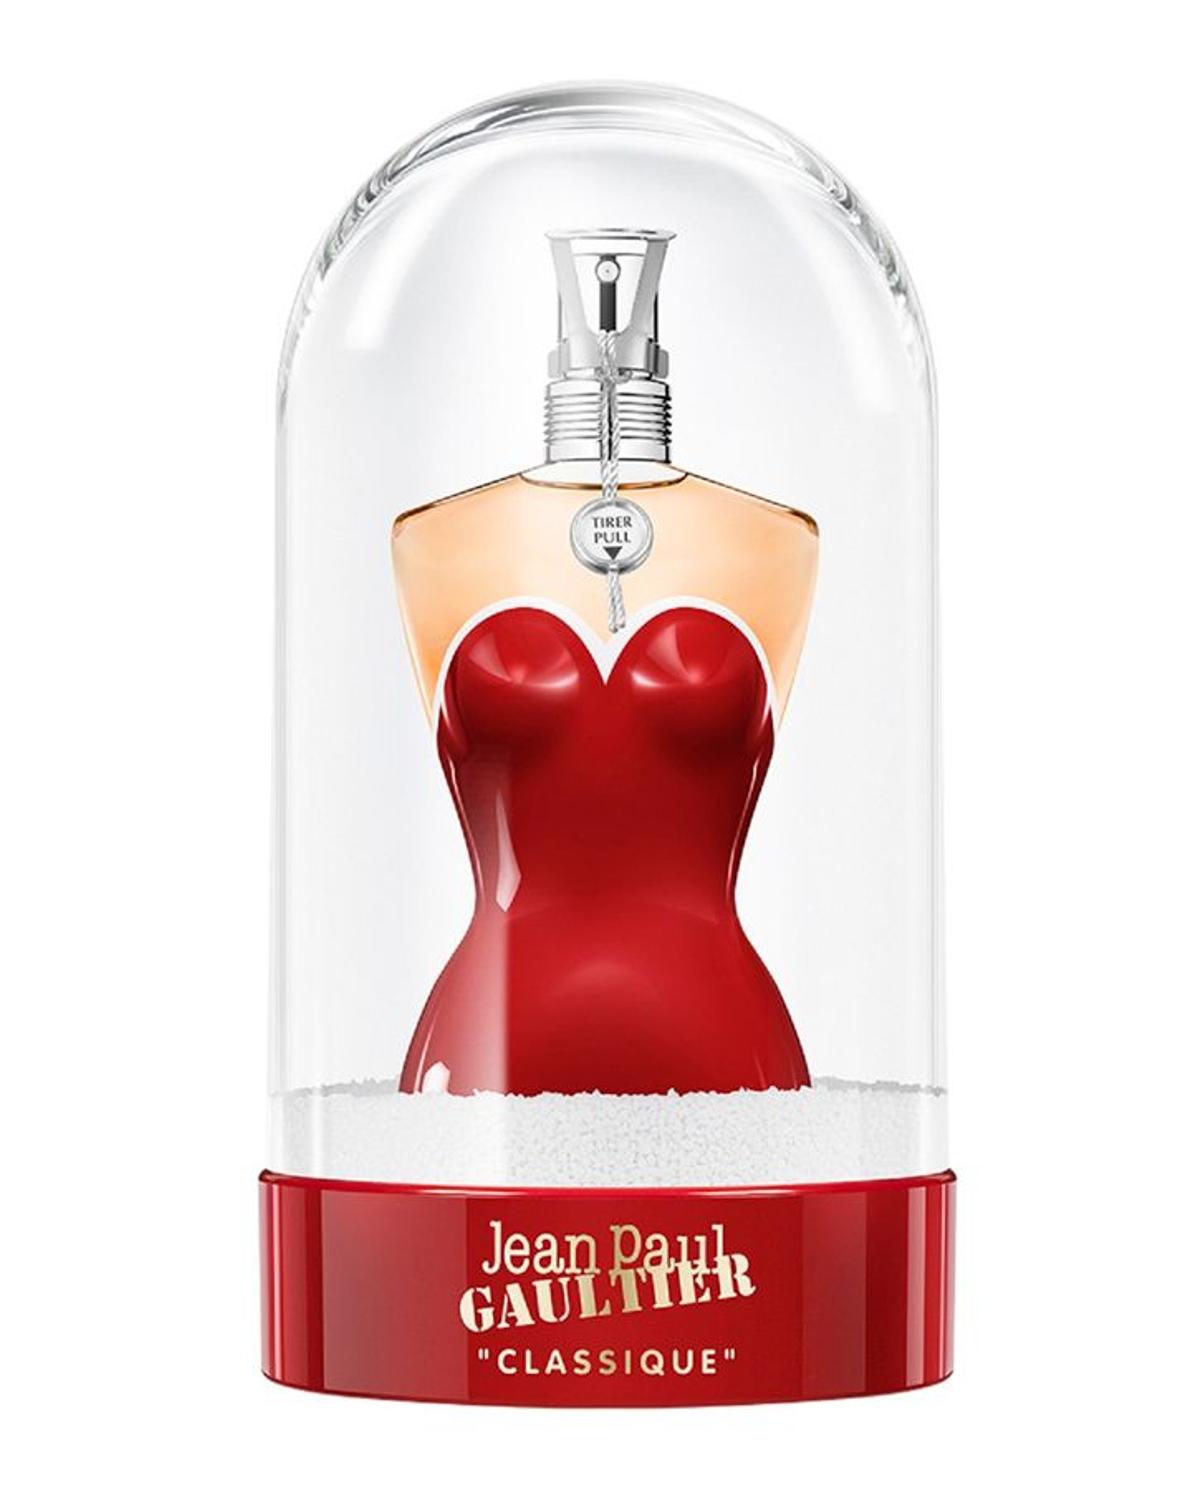 Regalos 'beauty' para Navidad: perfume de Jean Paul Gaultier